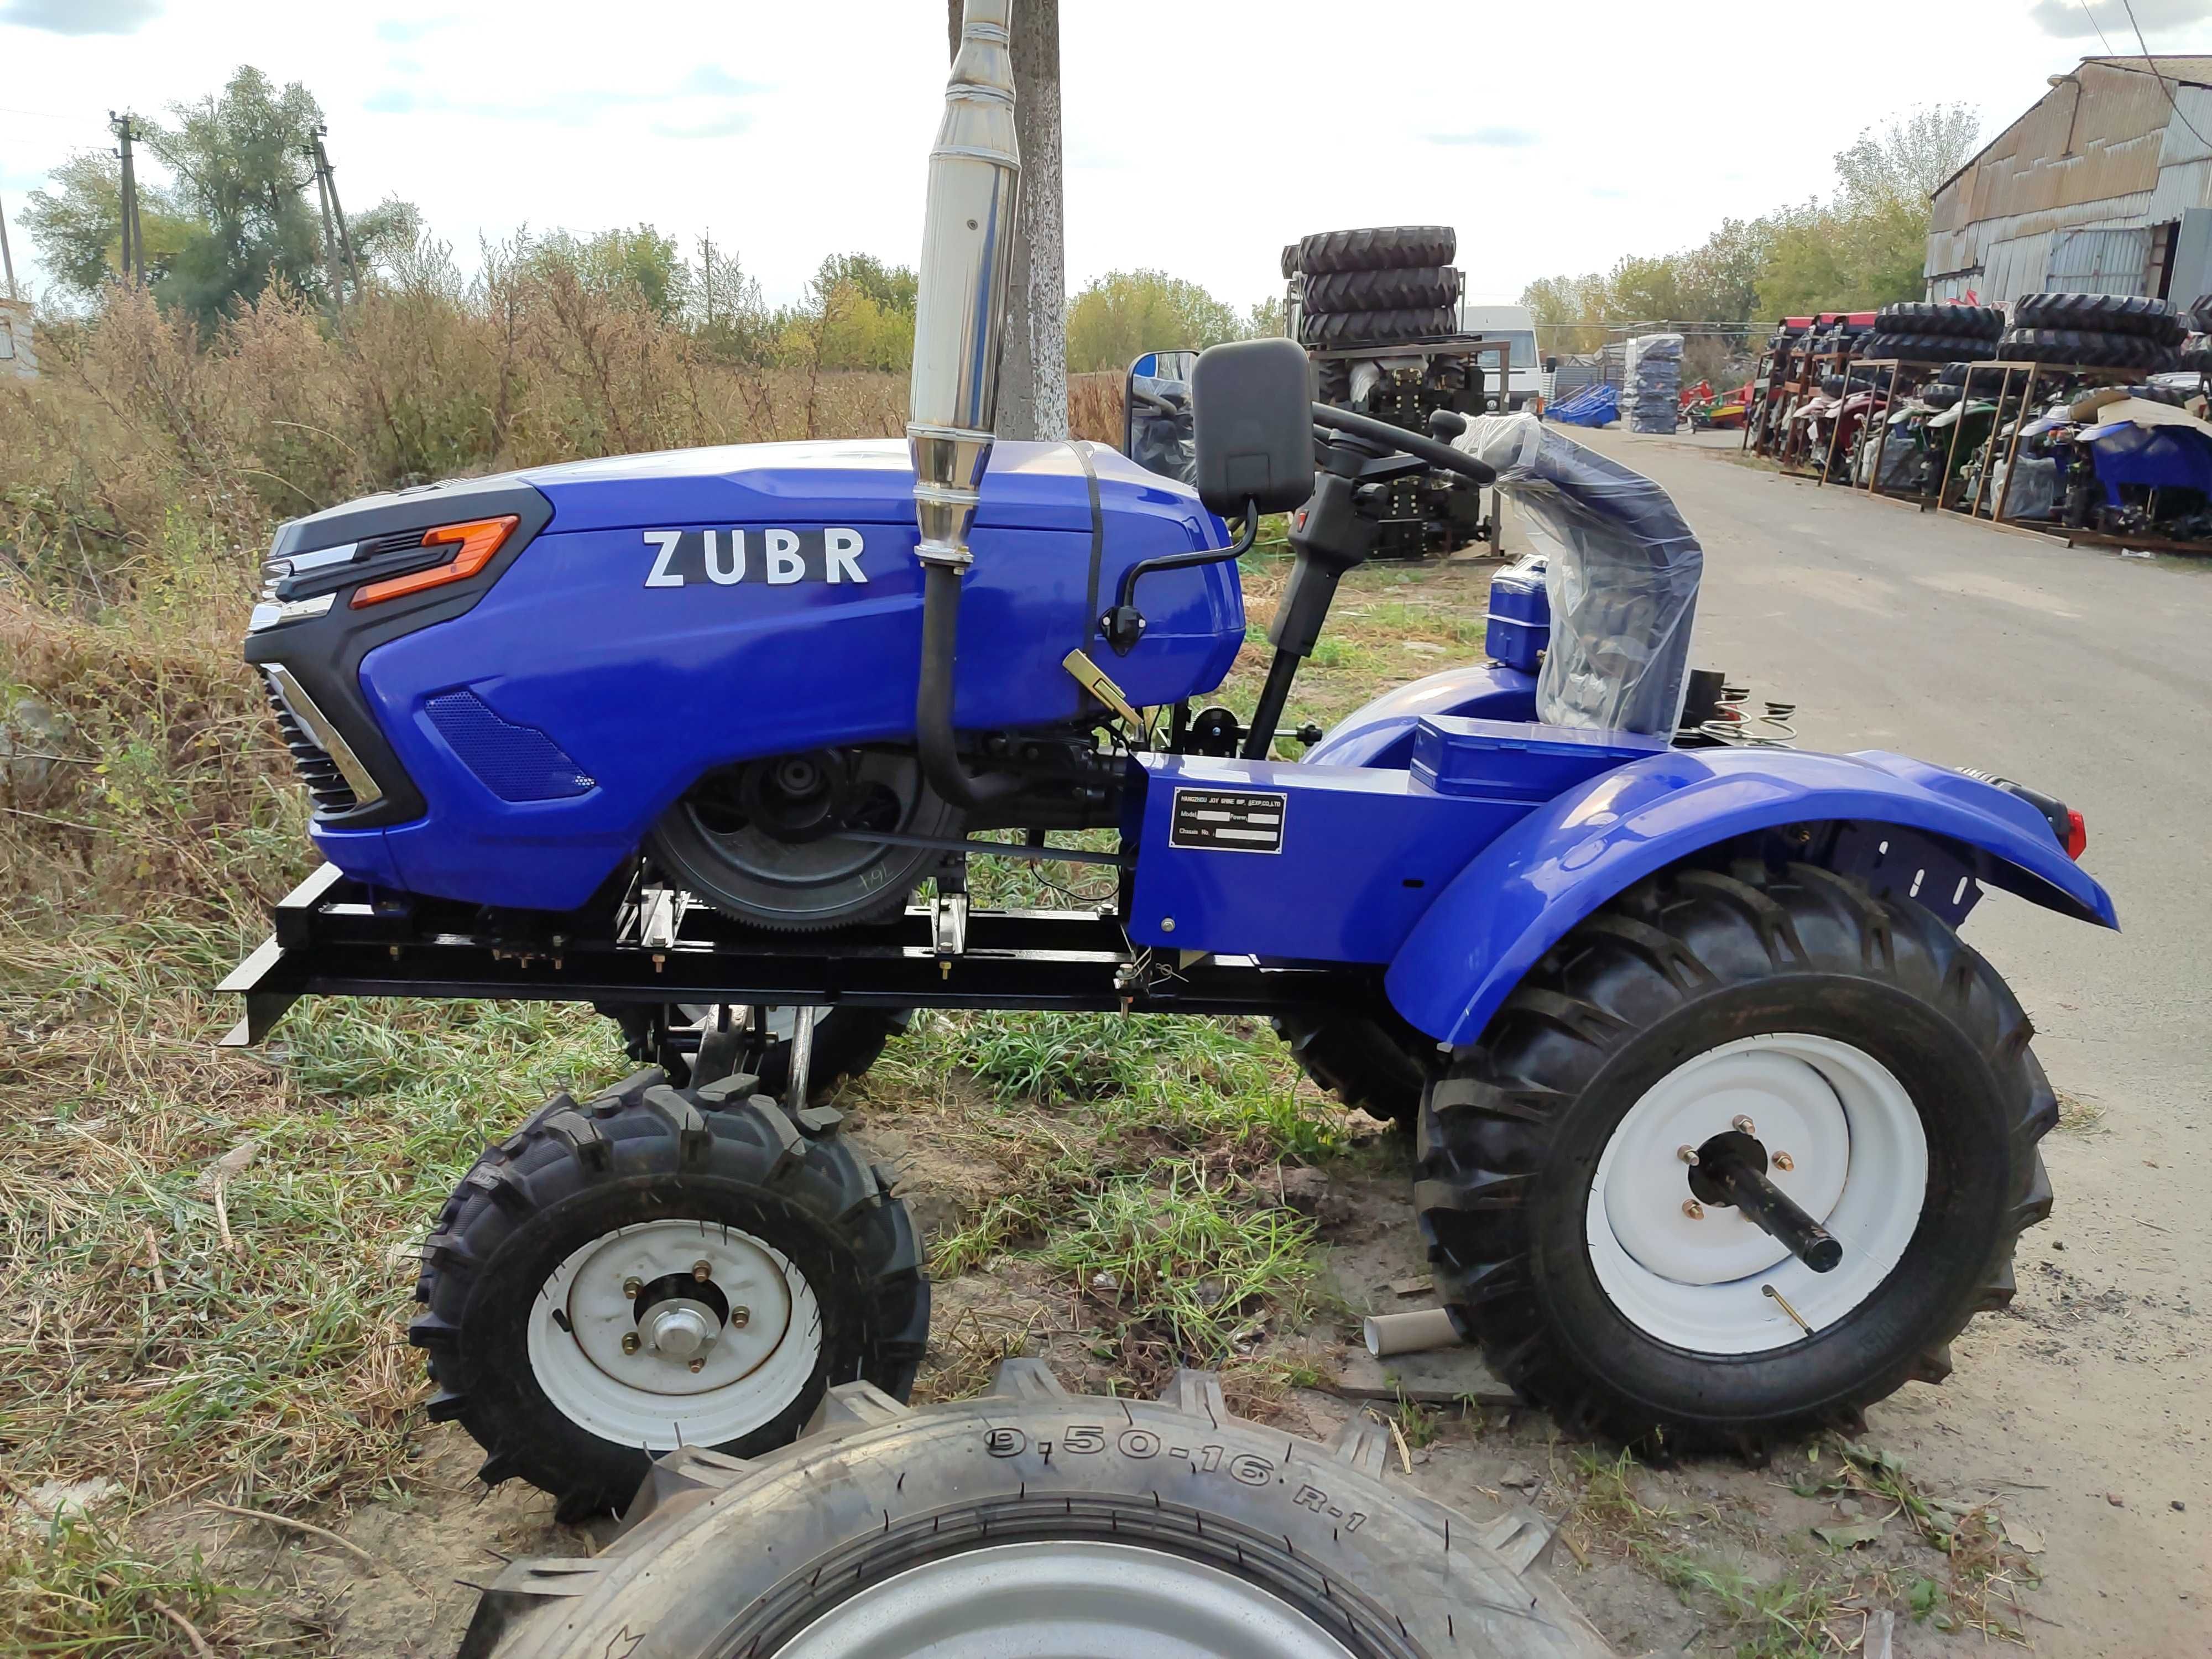 Трактор Зубр 250 XL Zubr фреза и плуг в подарок